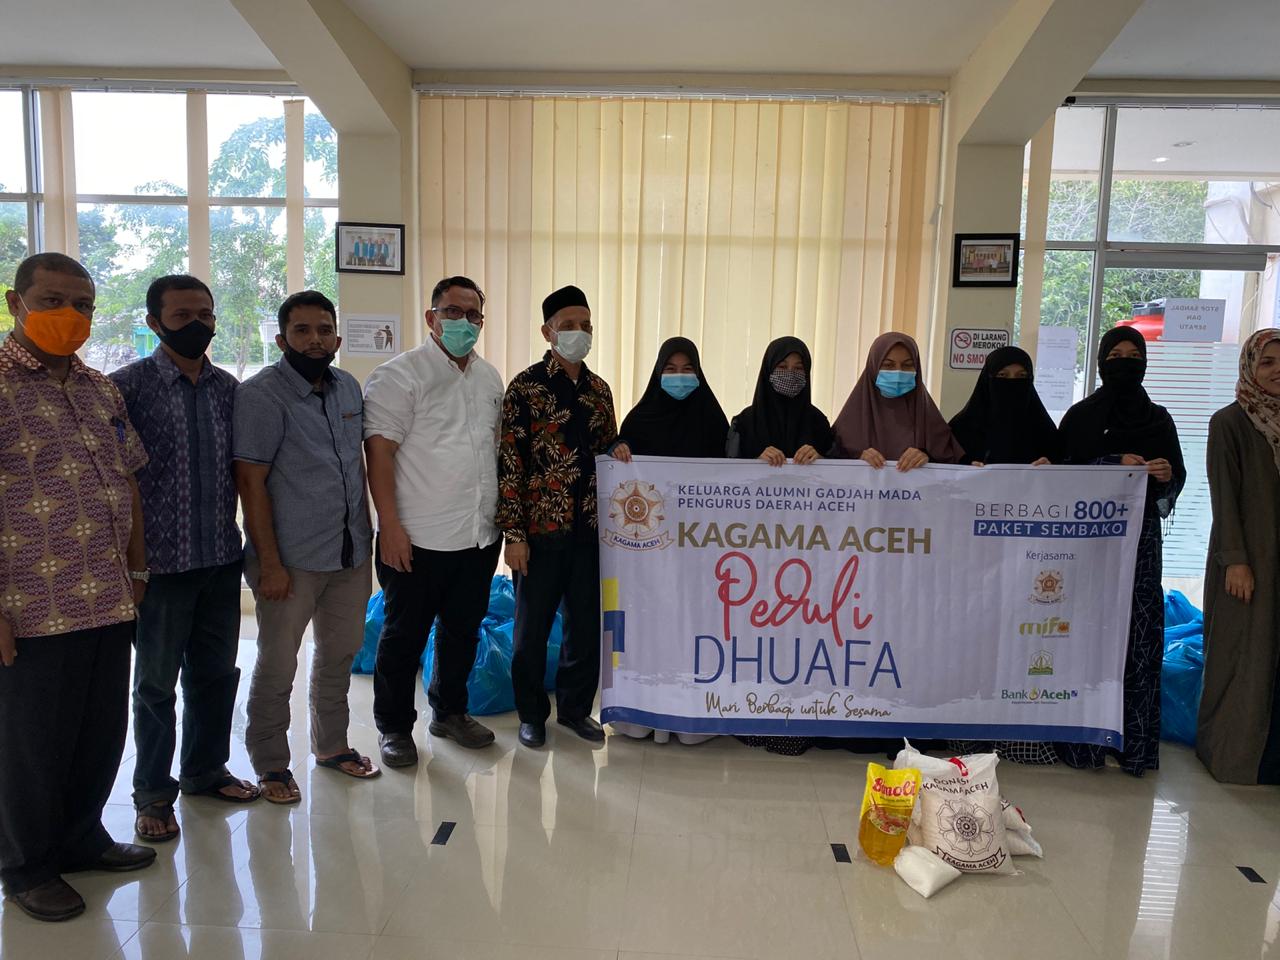 Kagama Aceh Salurkan Bantuan Paket Sembako Sebanyak 814 kepada Warga Terdampak Covid-19